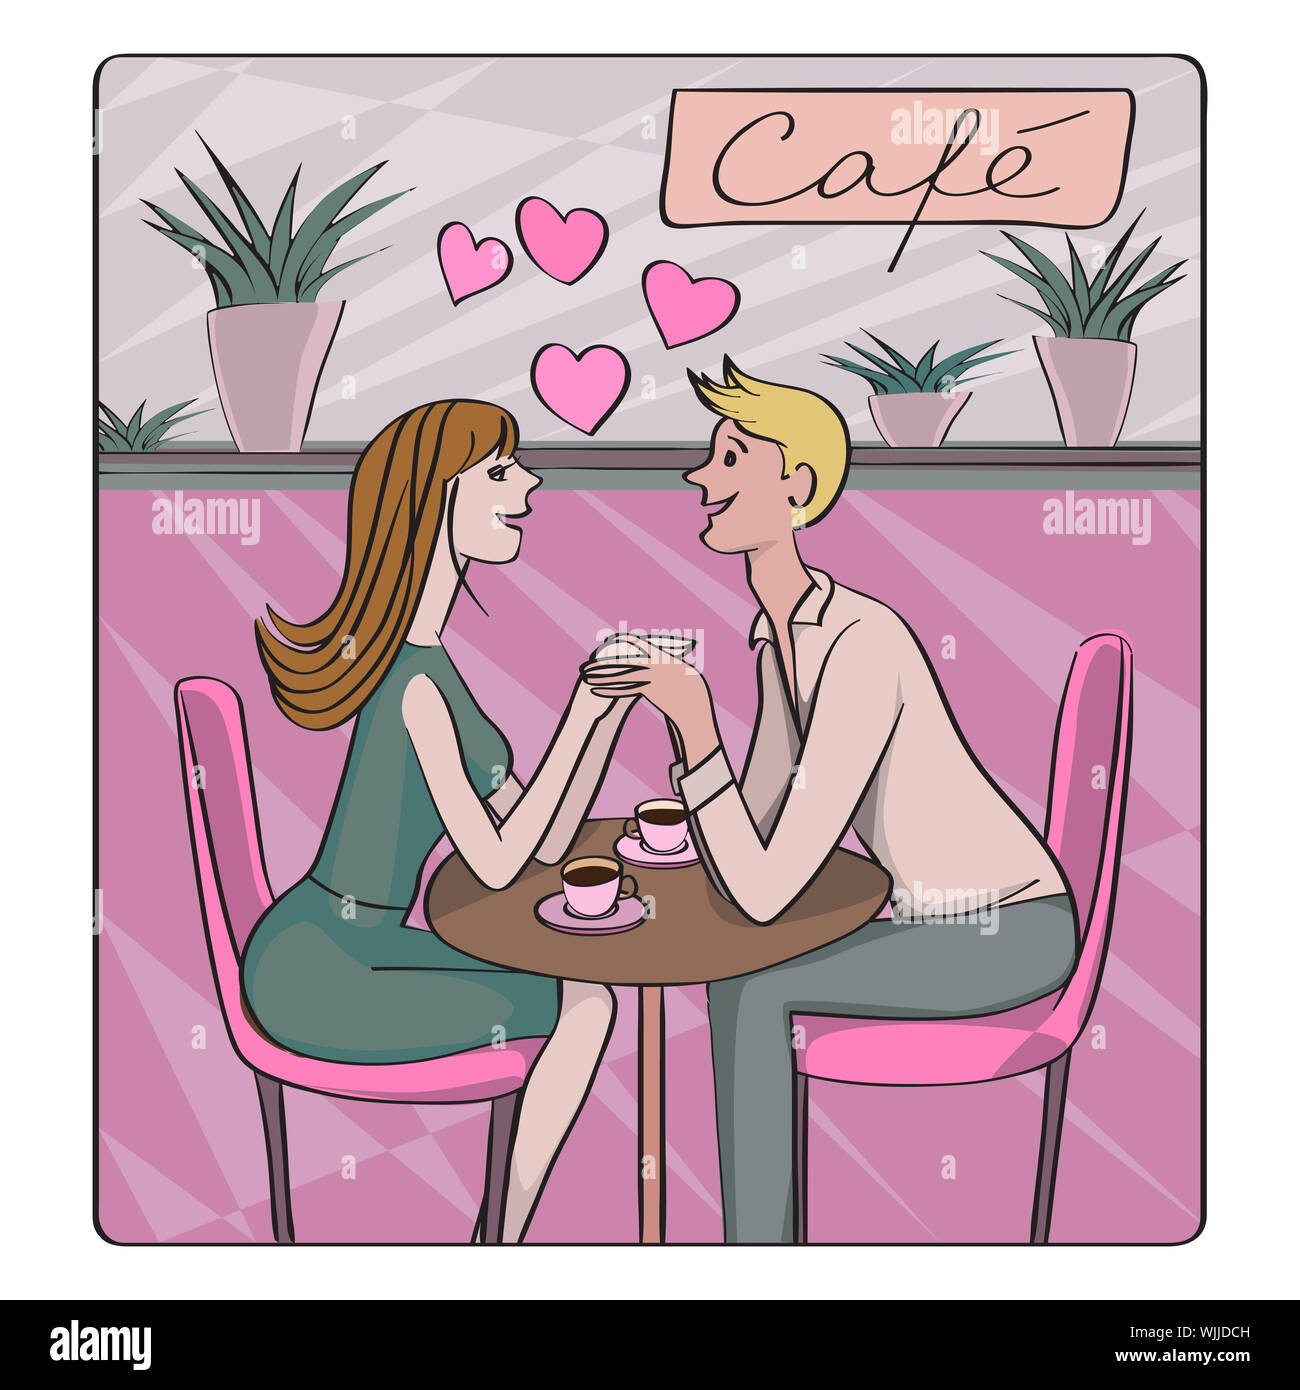 Saint-valentin, datant de miel ou carte rétro, cartoon illustration de deux amoureux au café de flirter et de boire du café Banque D'Images